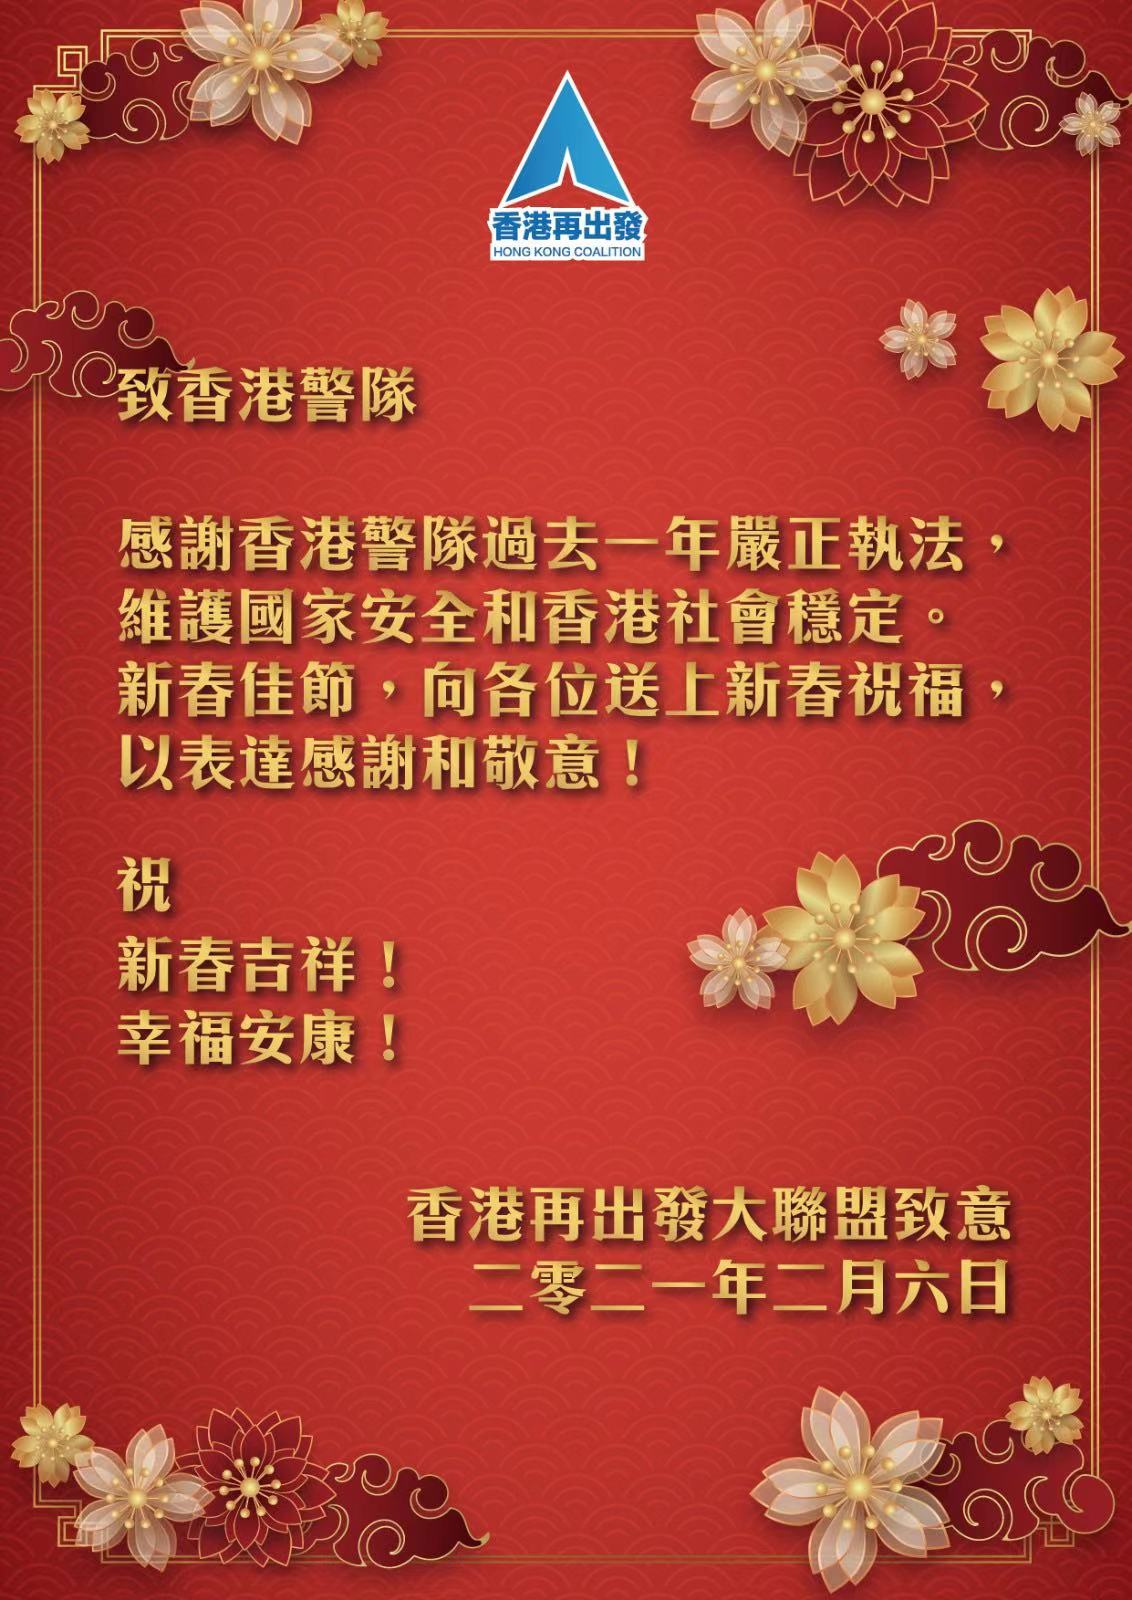 「香港再出發大聯盟」到警總送新春祝福